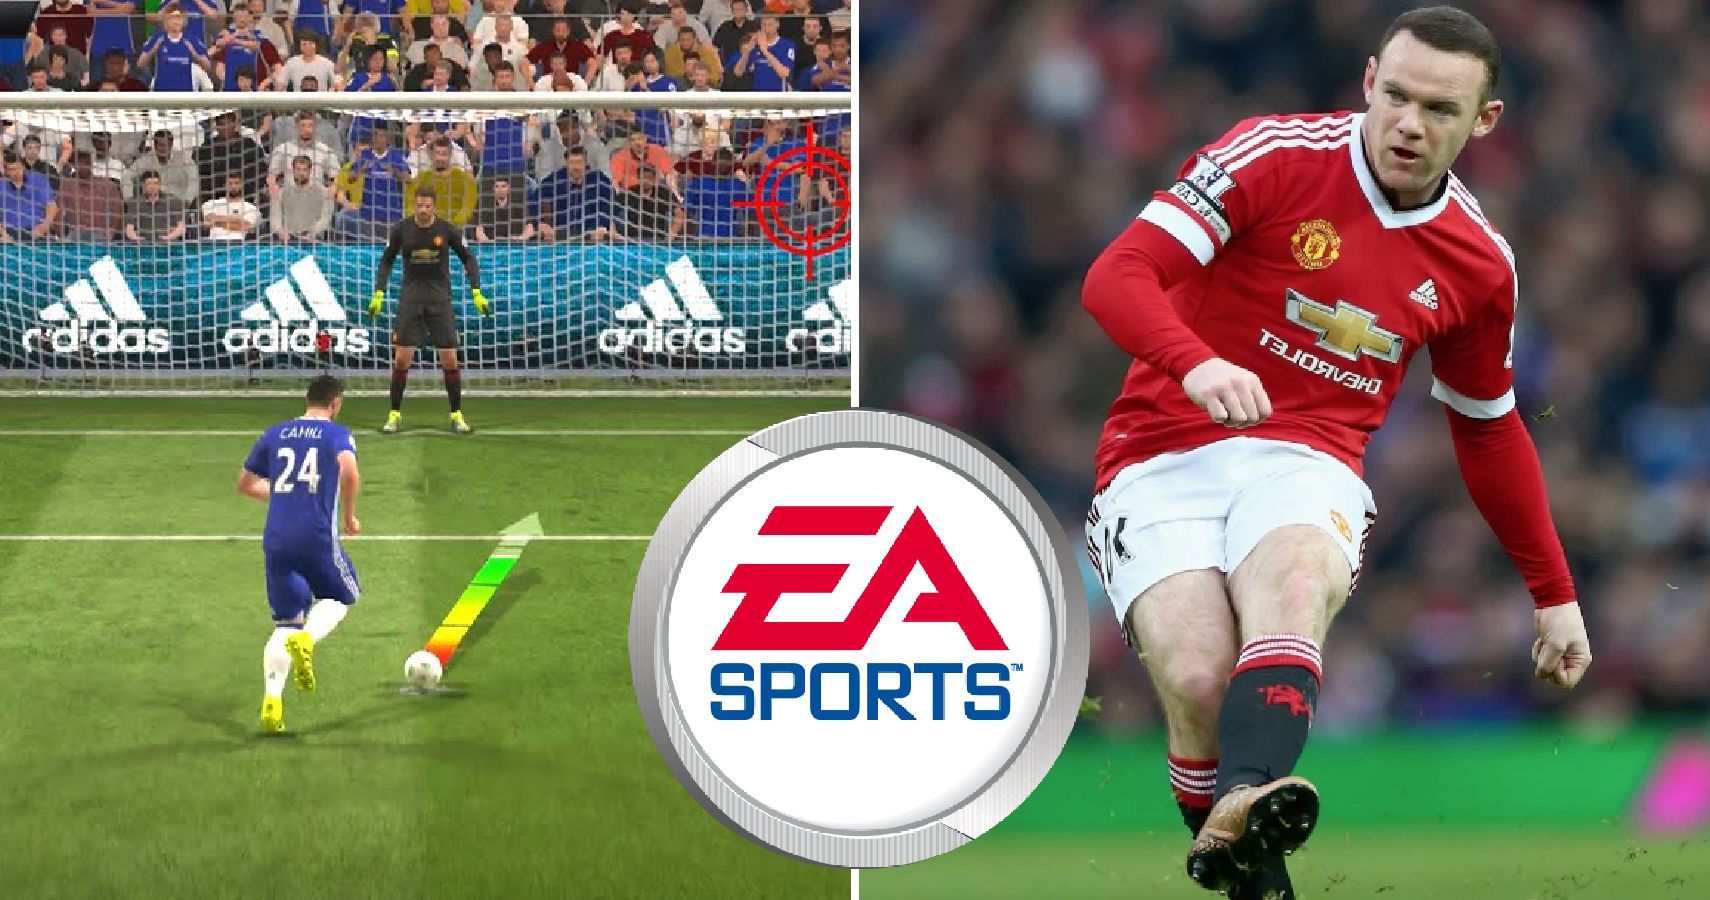 FIFA 18 Kick Off – FIFPlay